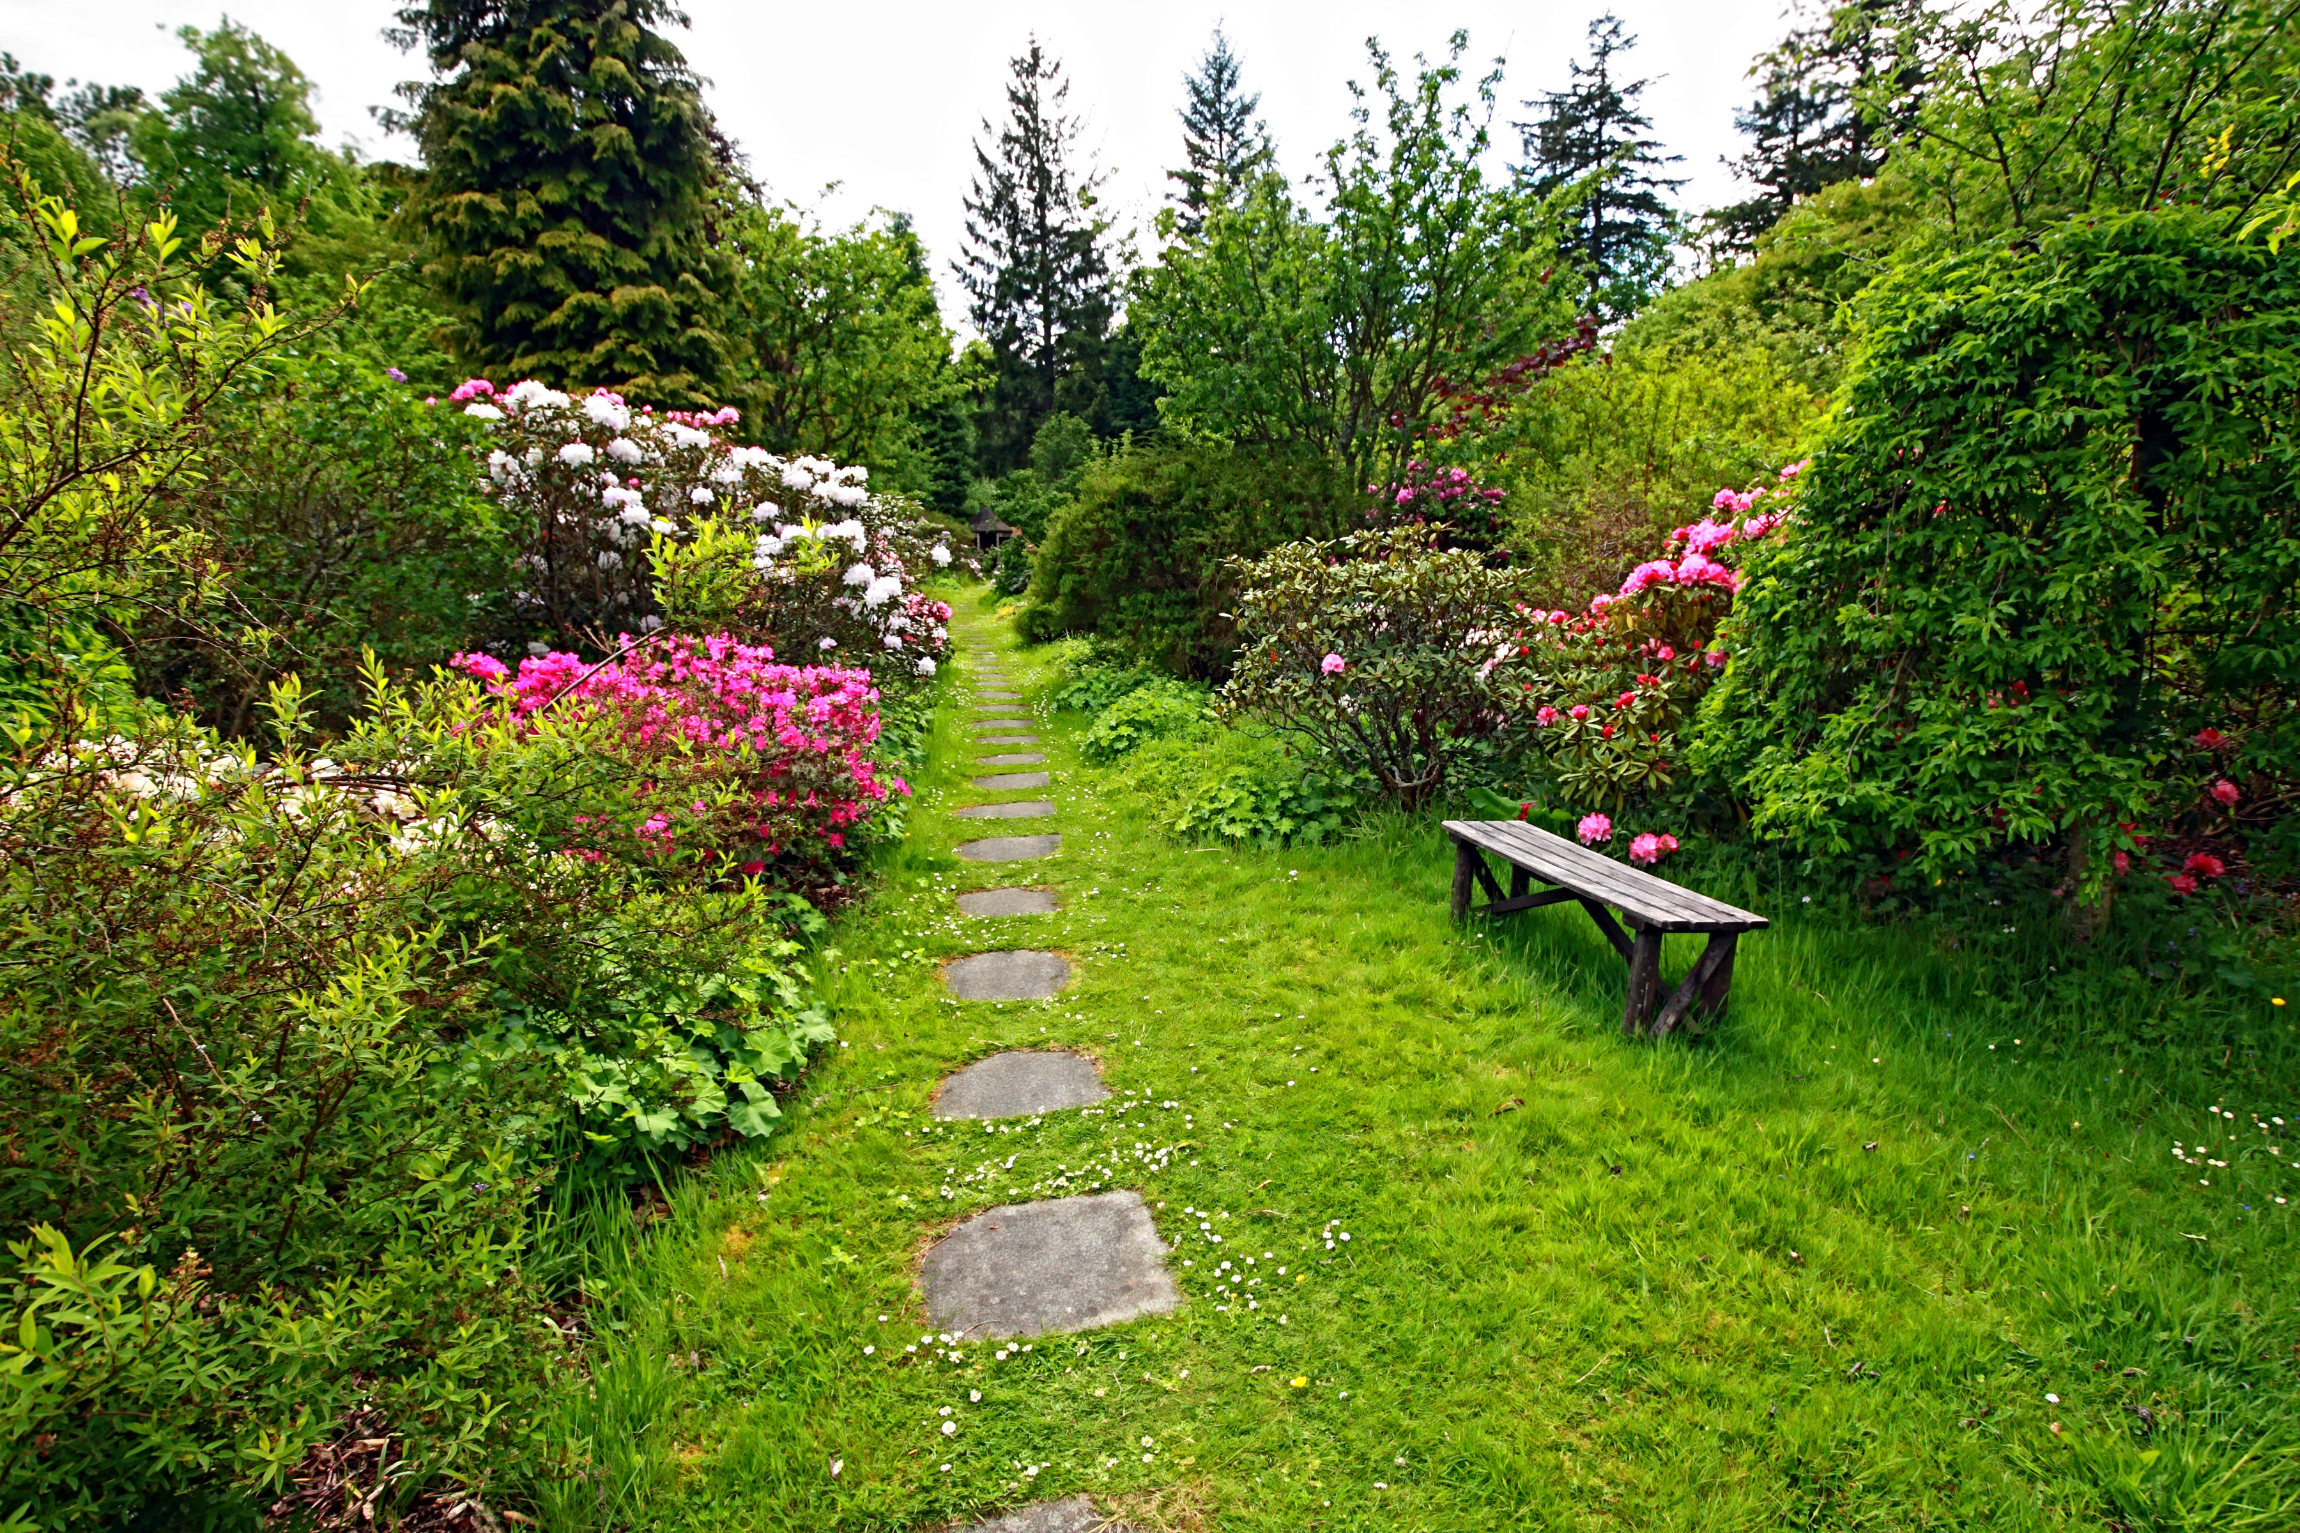 Un banc dans un jardin est synonyme de détente ! © JulietPhotography, Adobe Stock